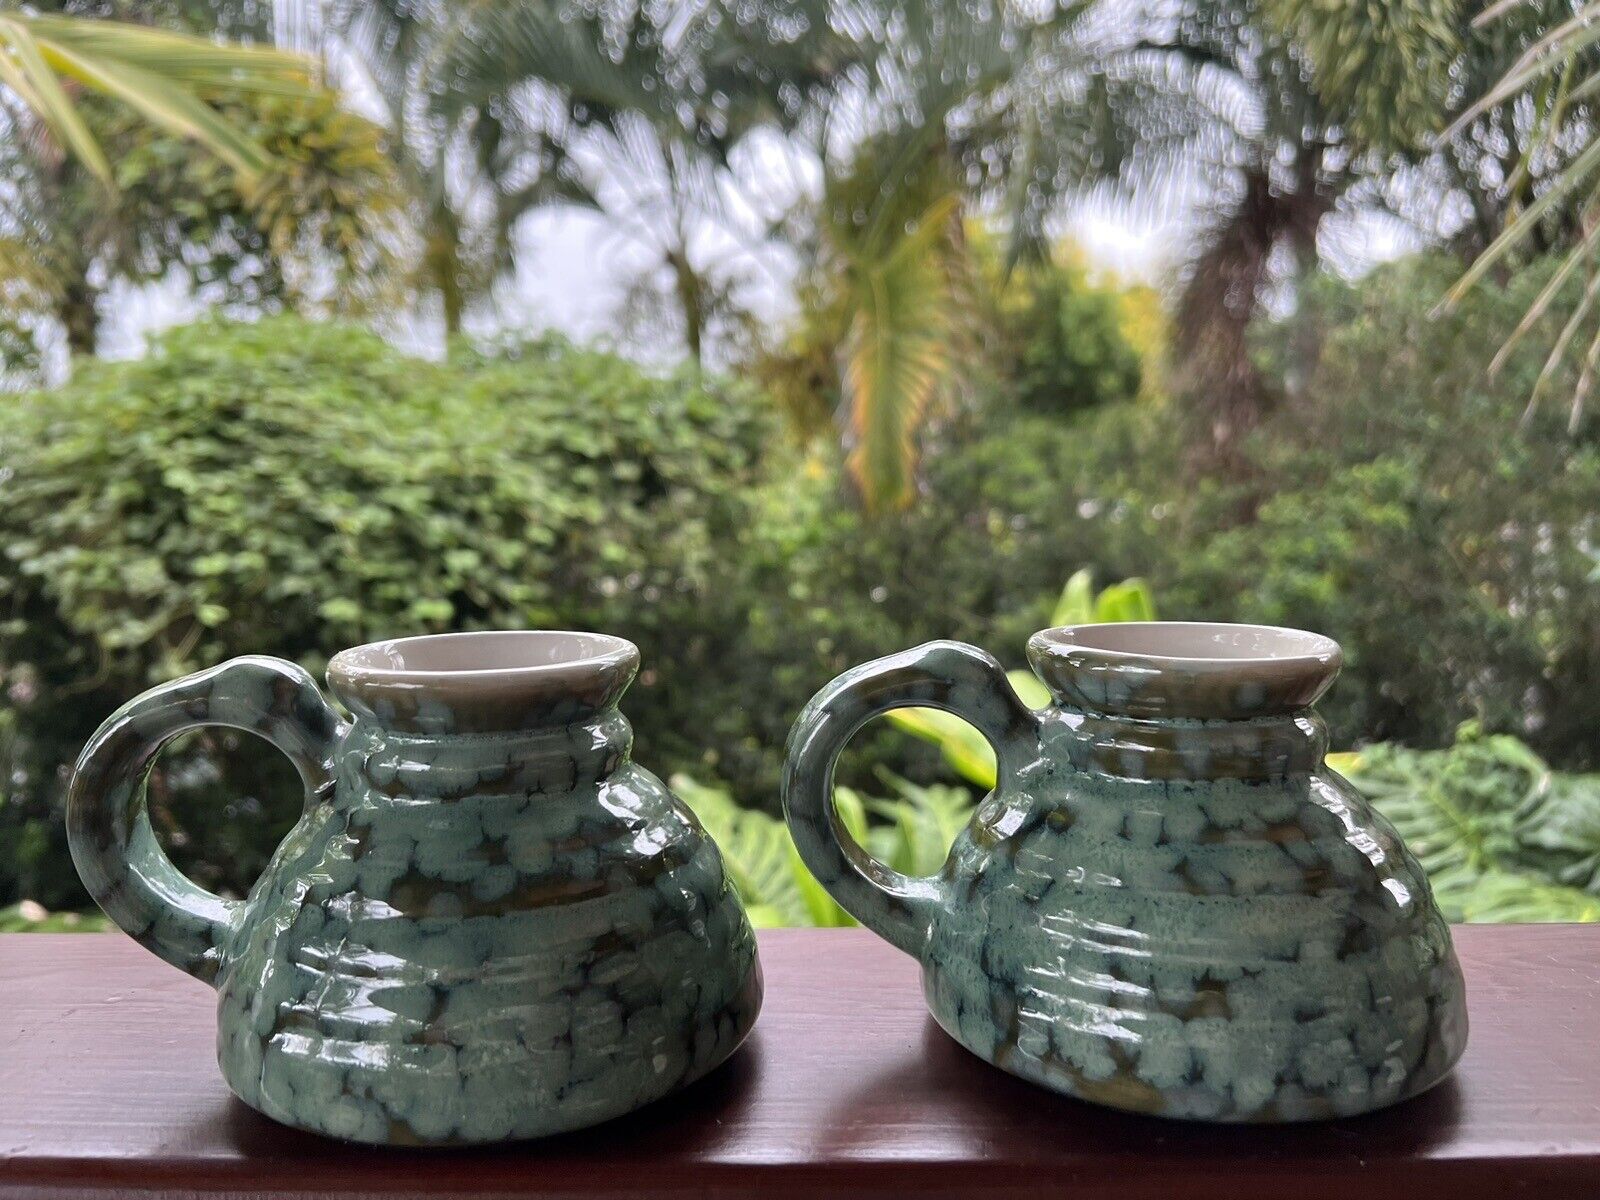 Westwood Ceramic No-spill Turquoise Coffee Mug Set